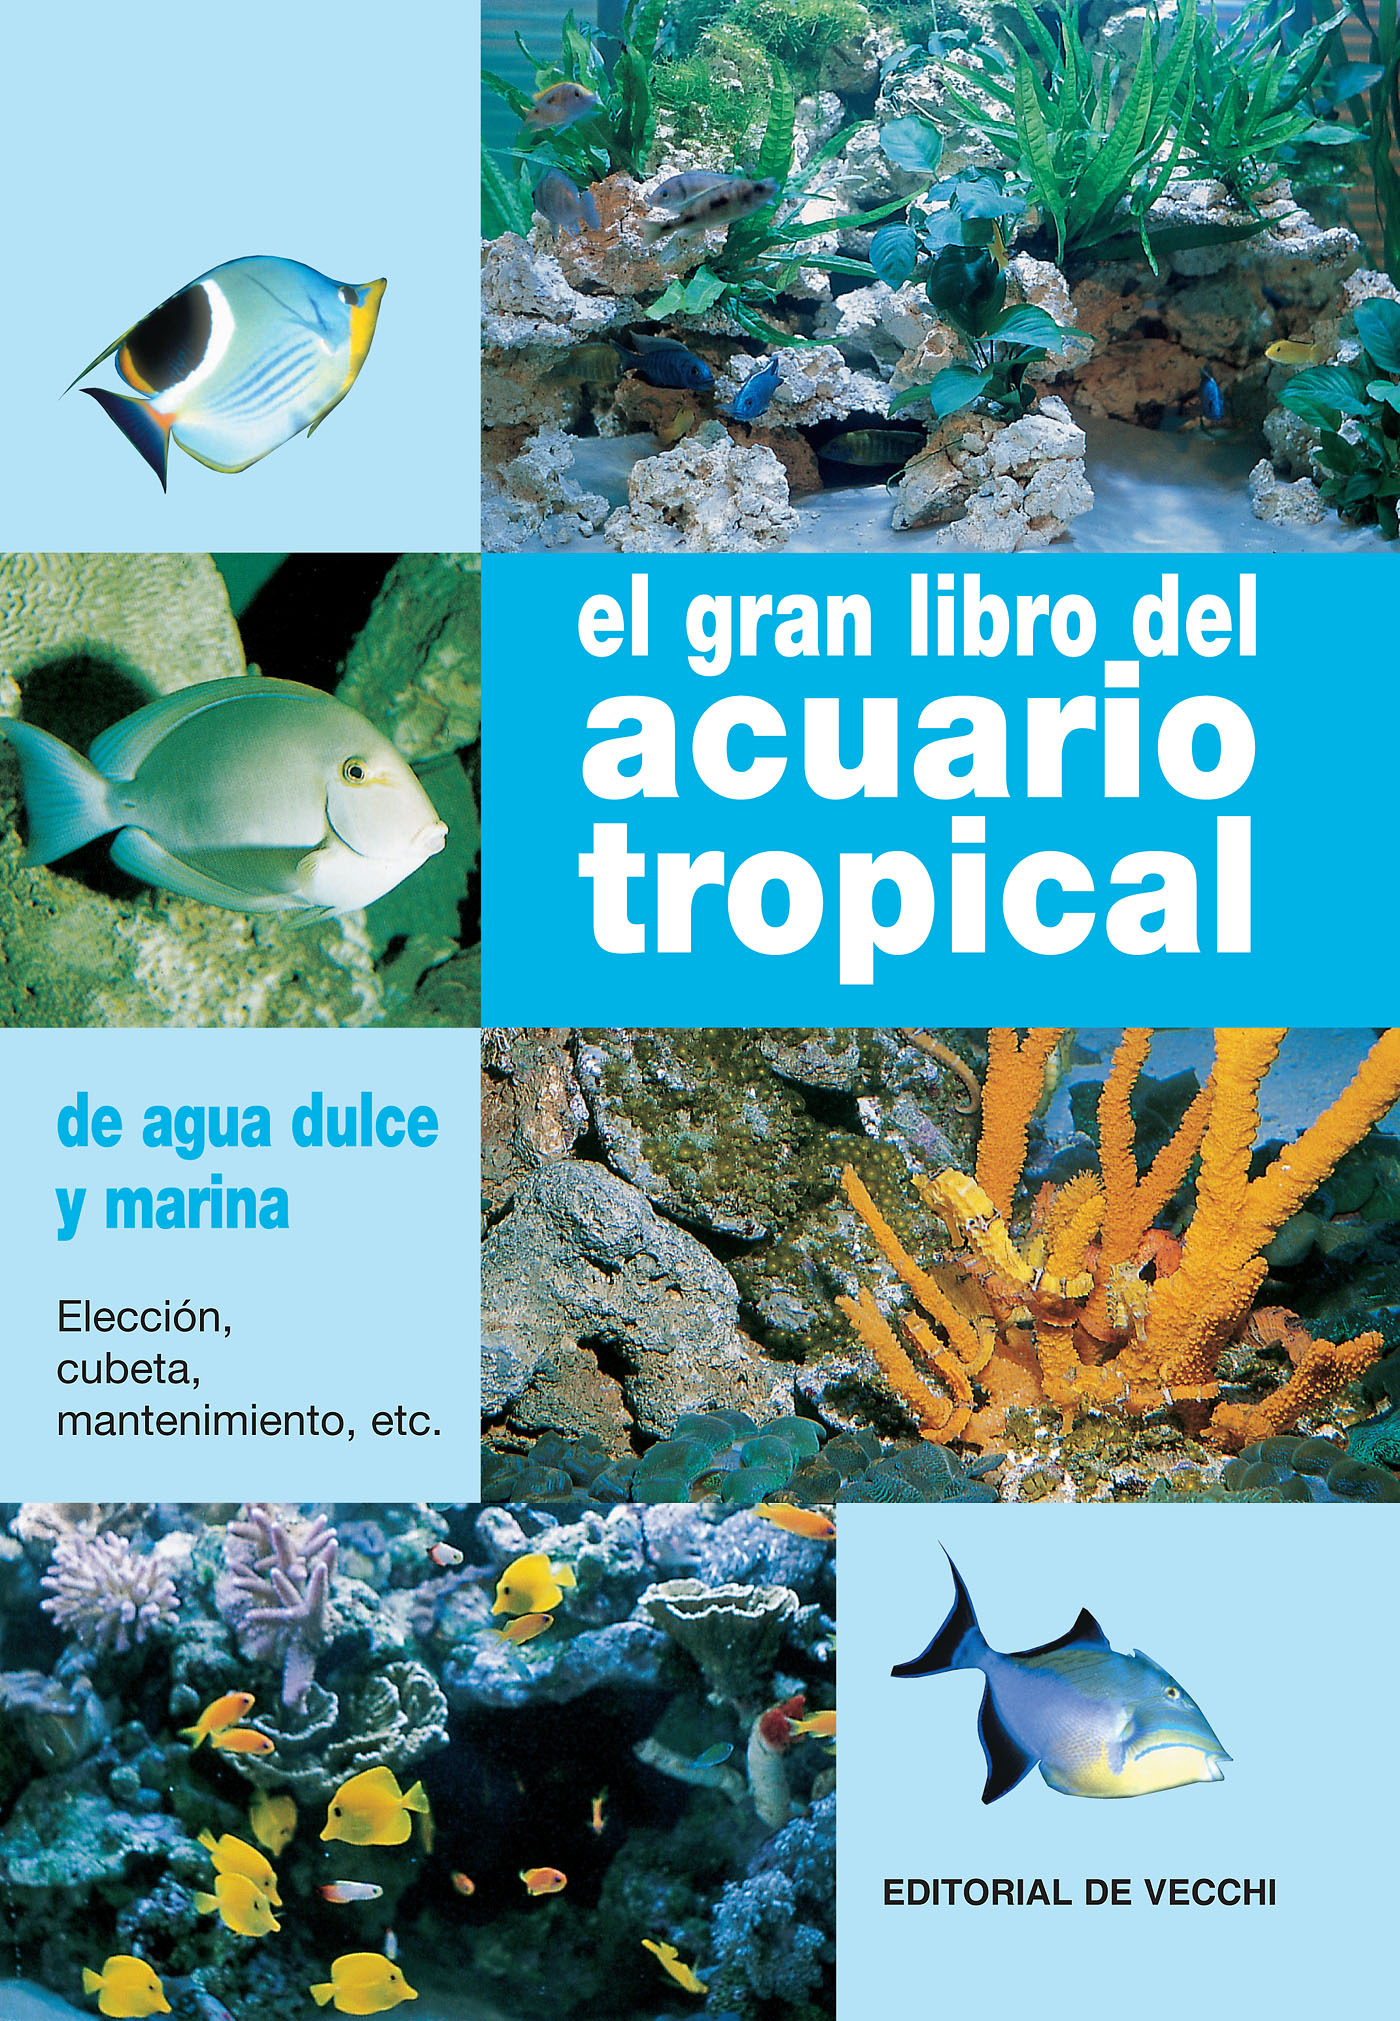 Parisse, Gelsomina - El gran libro del acuario tropical, ebook